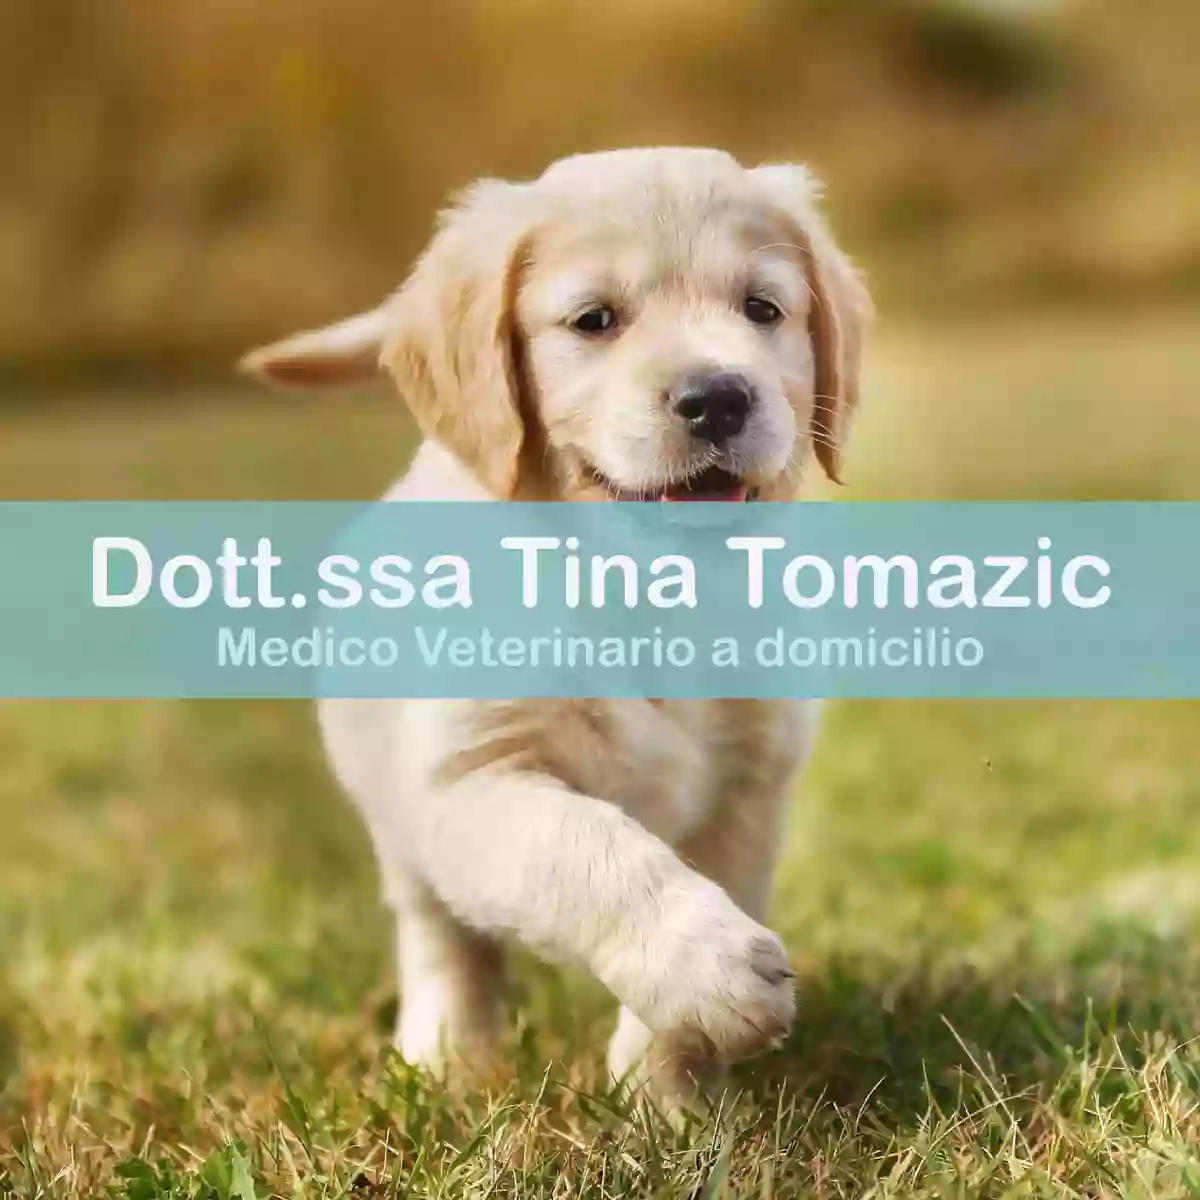 Veterinario a domicilio Dott.ssa Tina Tomazic